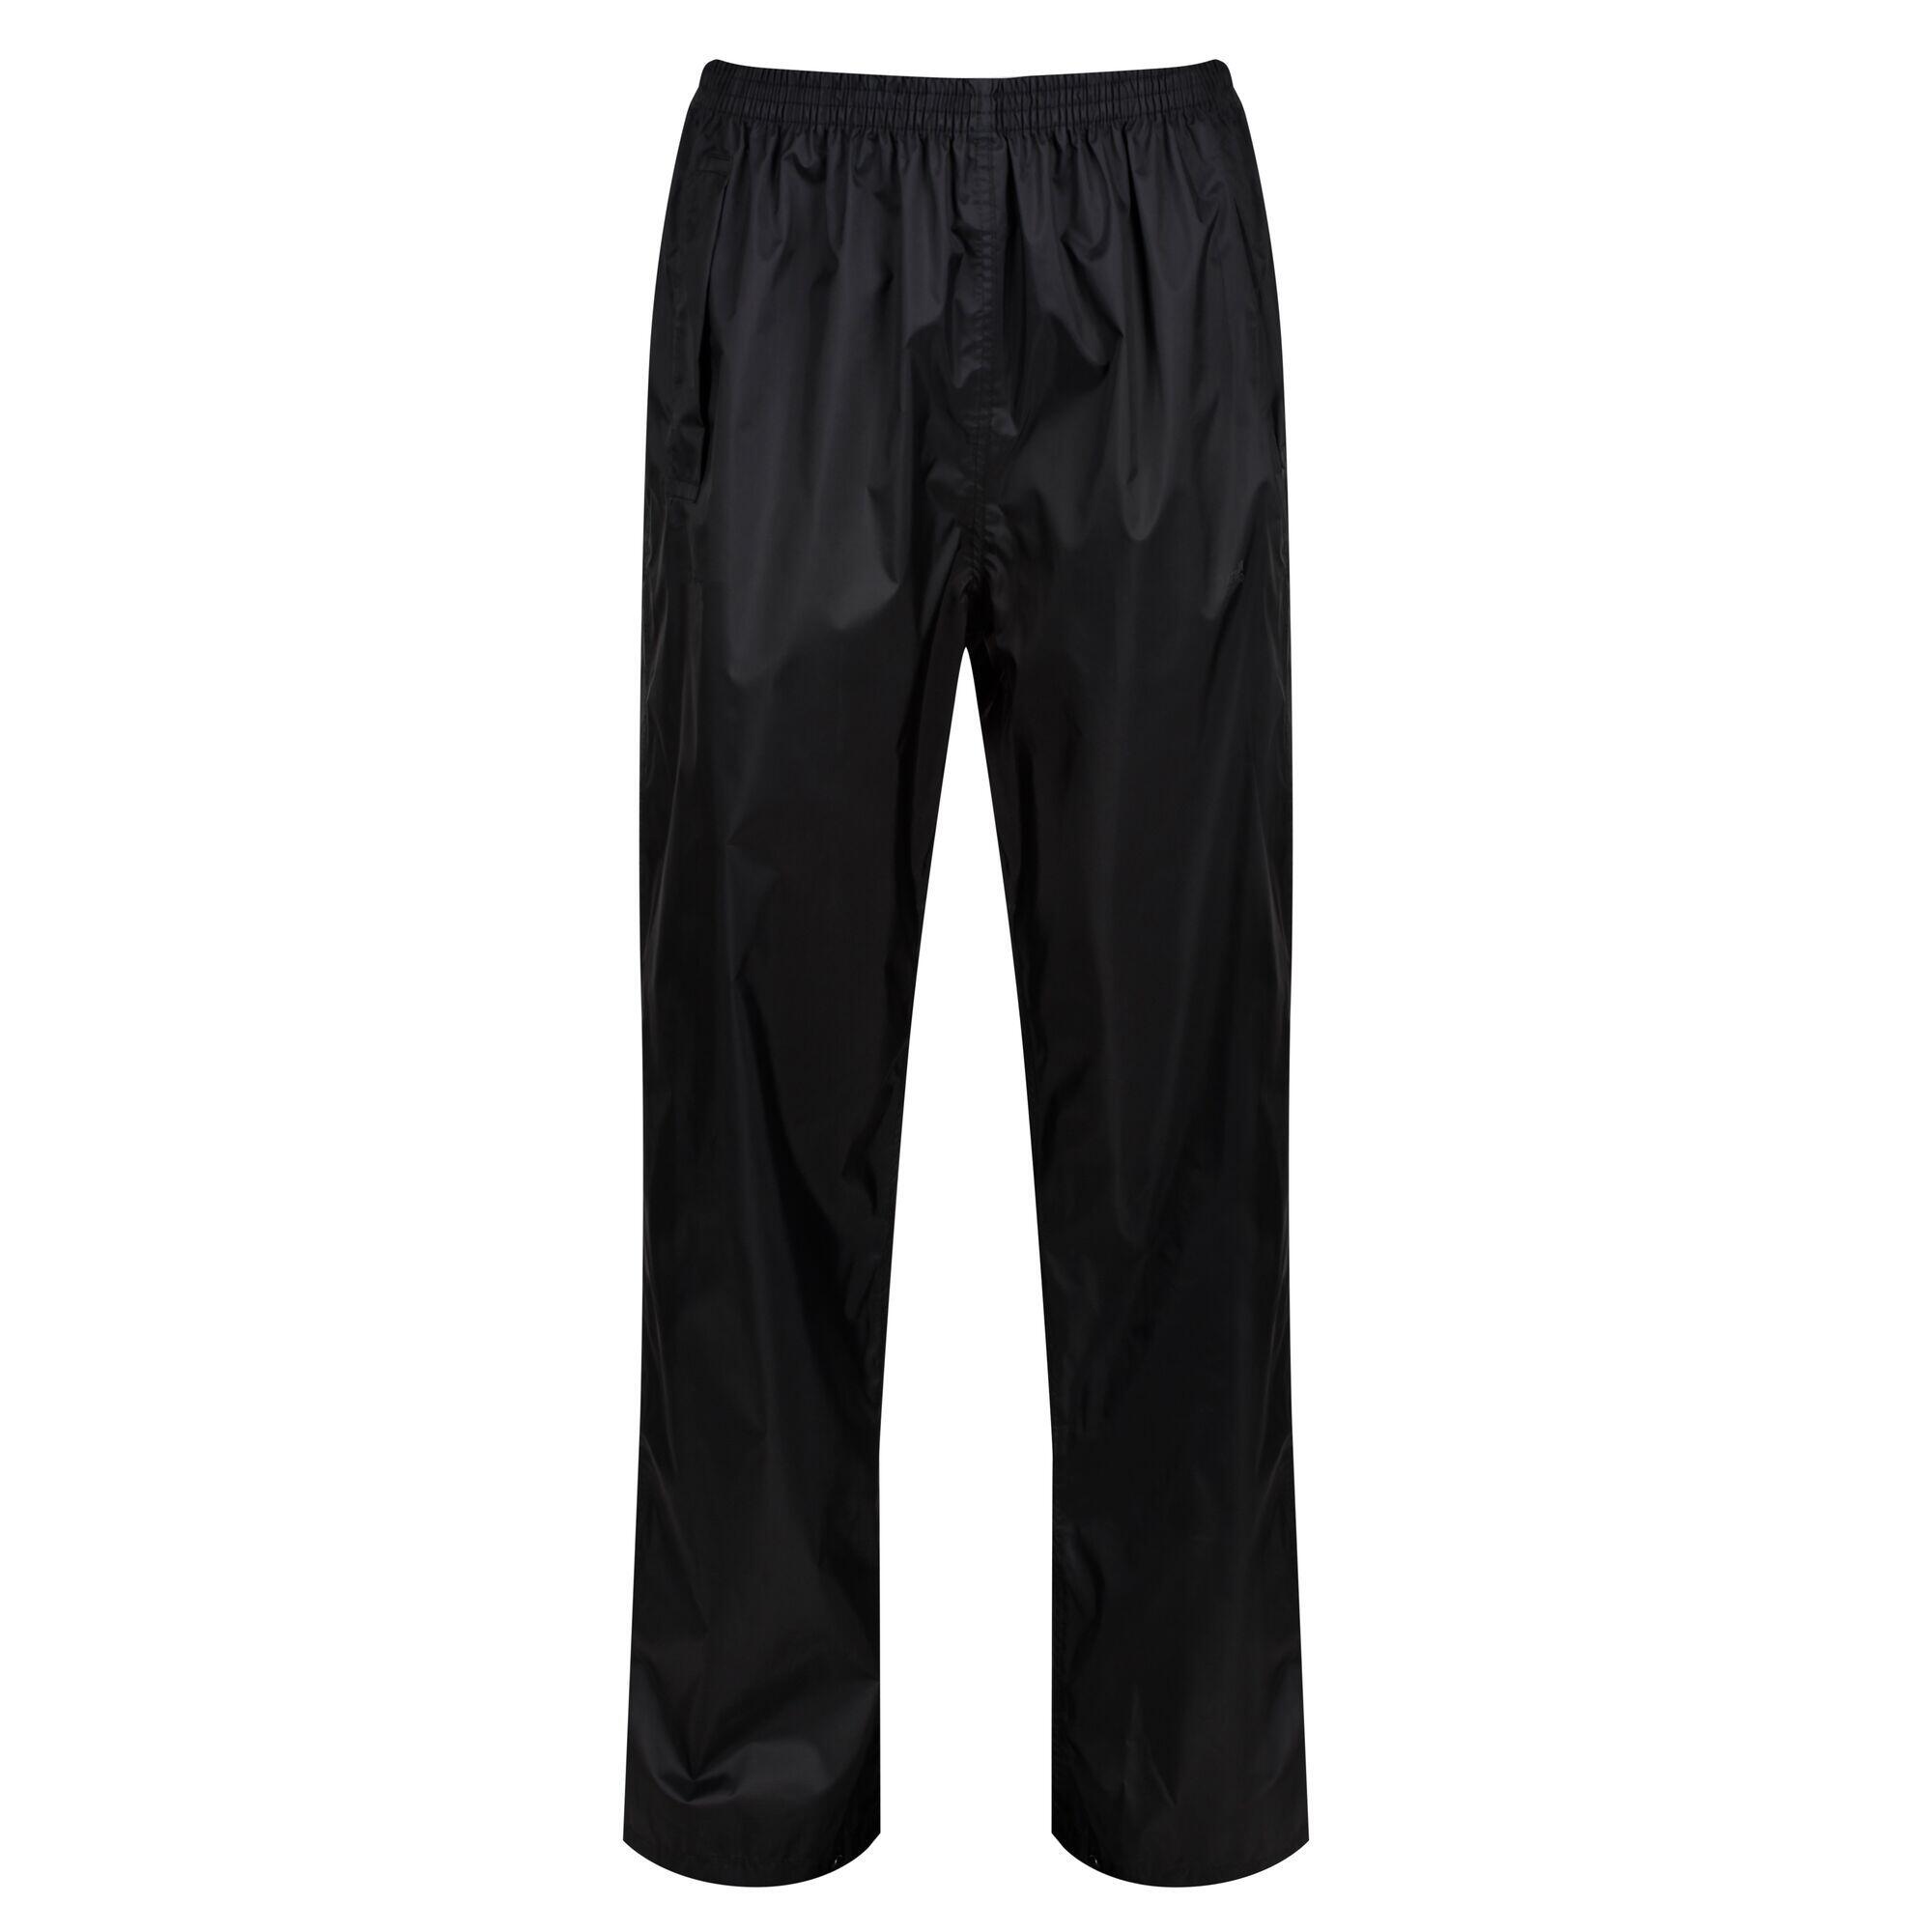 Womens/Ladies Packaway Rain Trousers (Black) 1/4